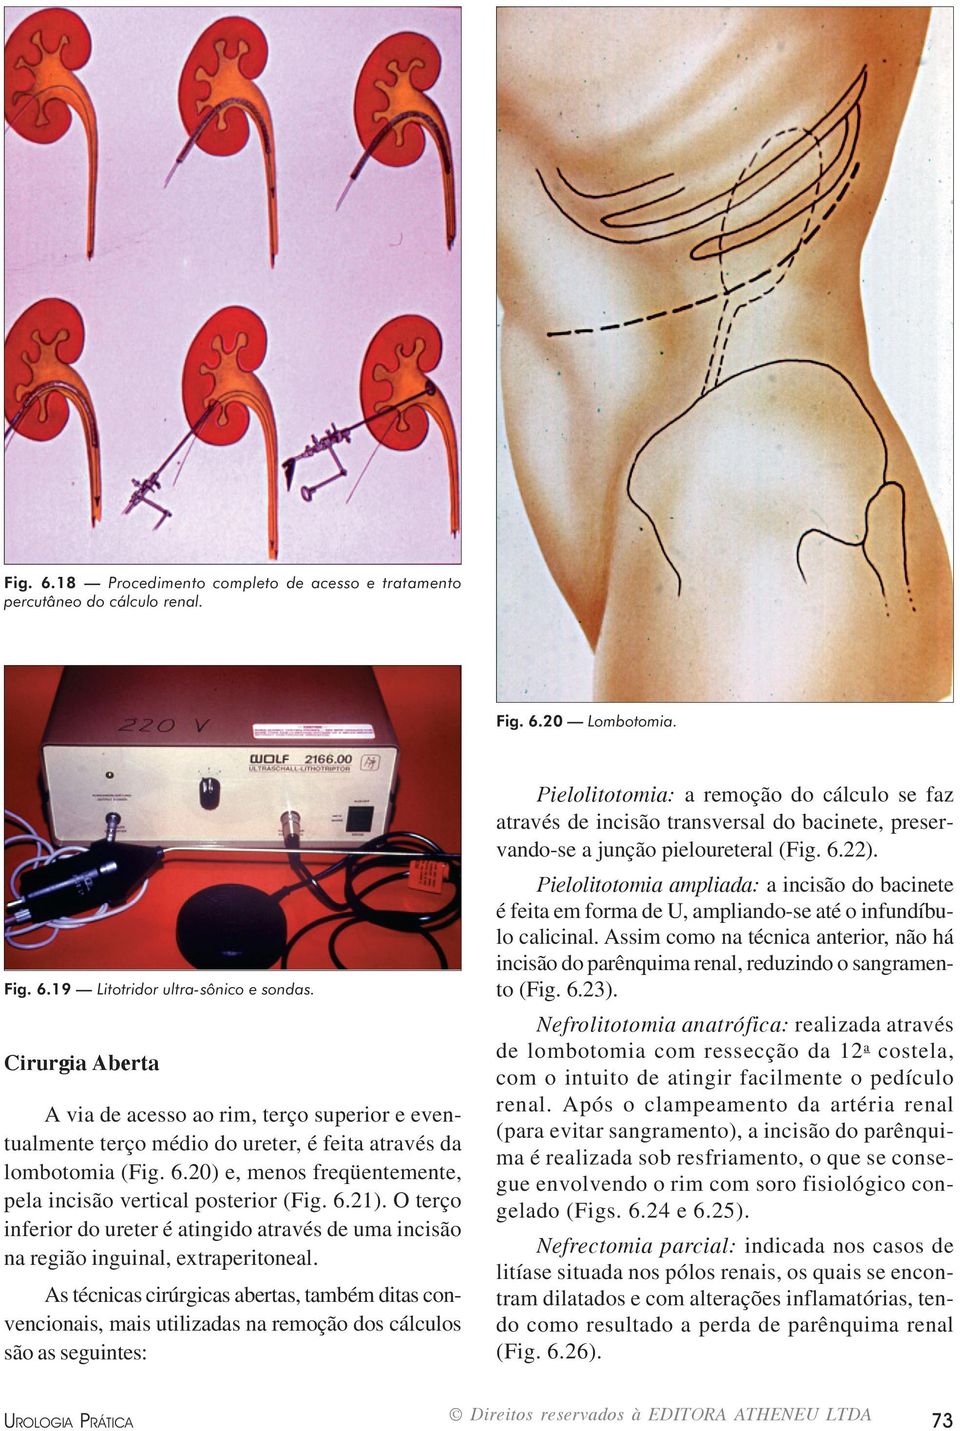 6.21). O terço inferior do ureter é atingido através de uma incisão na região inguinal, extraperitoneal.